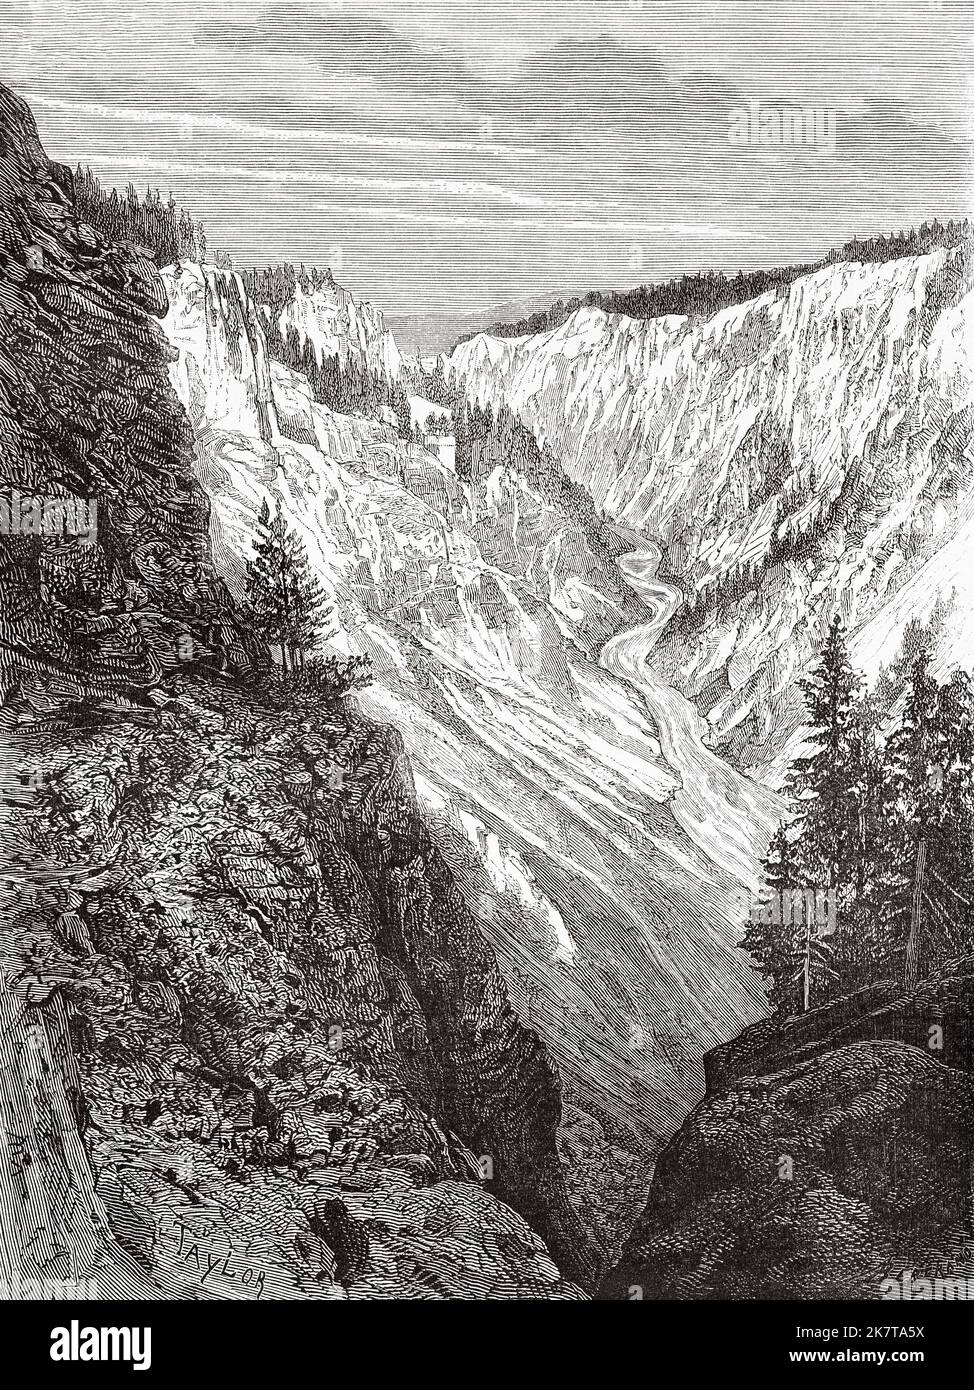 El Gran Cañón en Yellowstone. Parque Nacional de Yellowstone, Wyoming, EE.UU. Parque Nacional de los Estados Unidos por Ferdinand Vandeveer Hayden, Gustavus Cheyney Doane y Nathaniel Pitt Langford, 1870-1872 Foto de stock